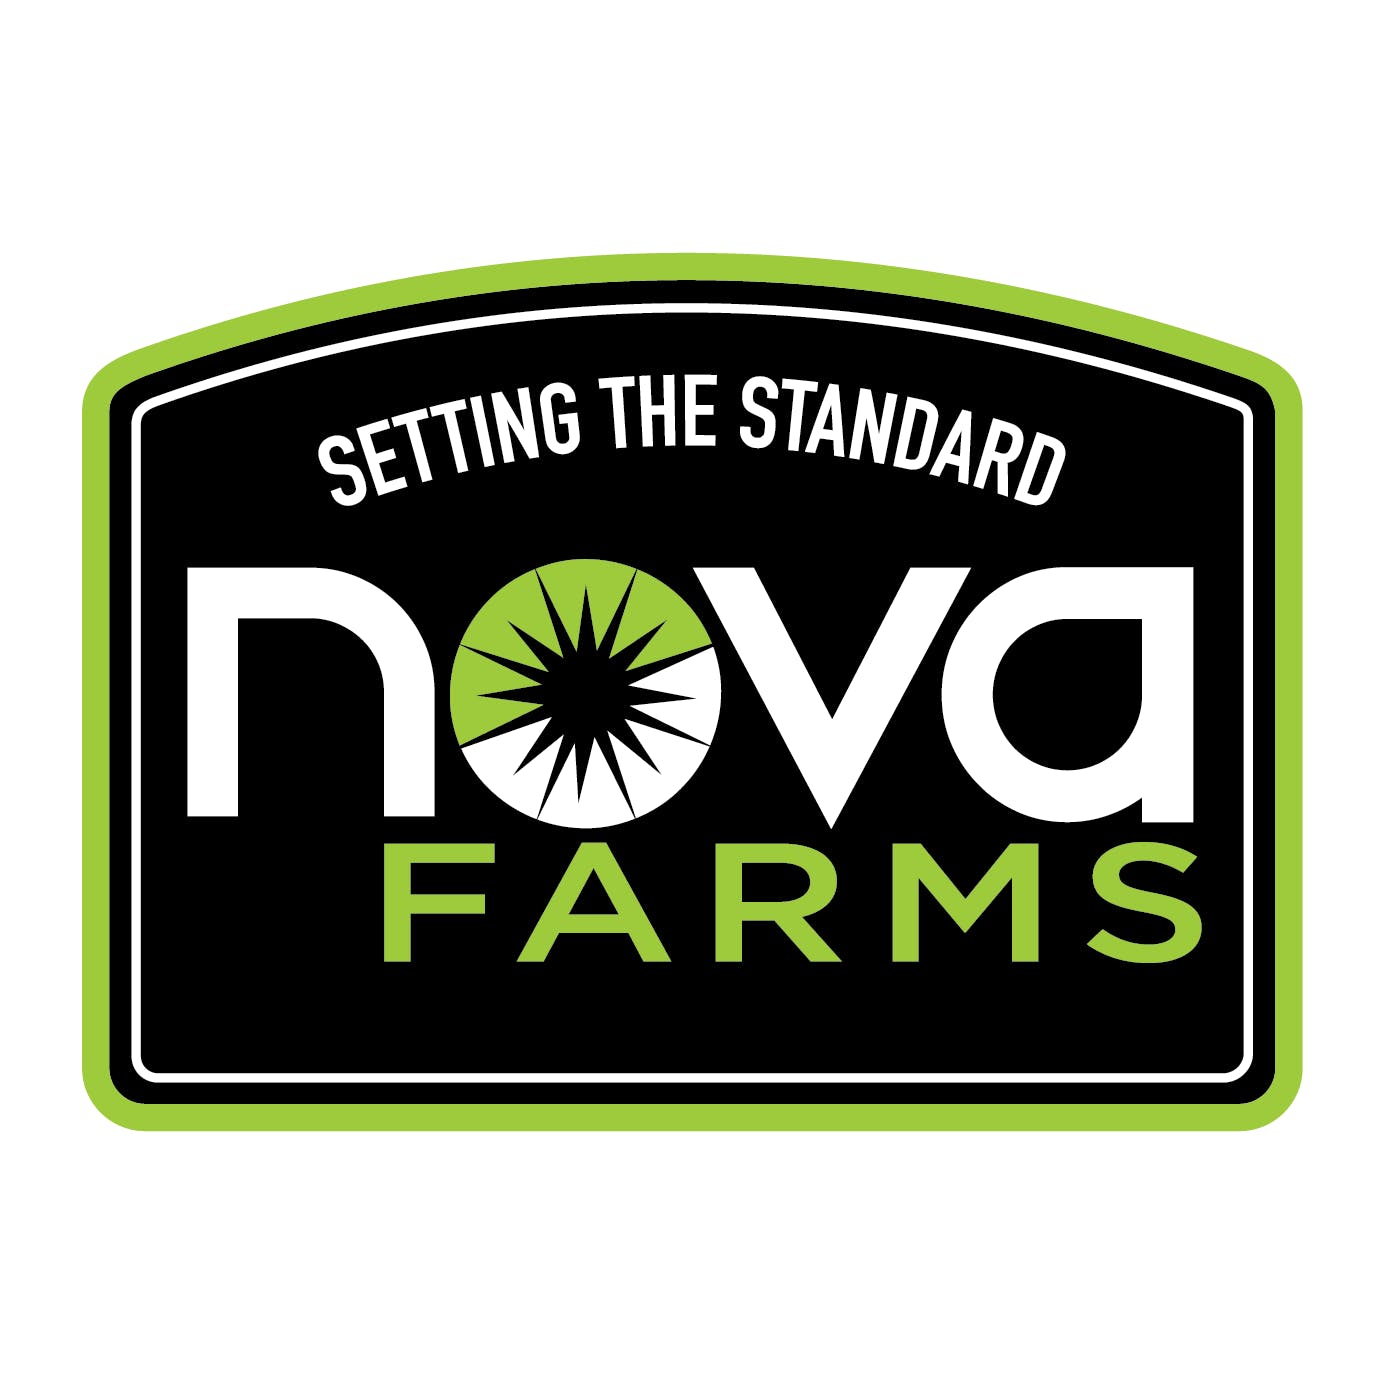 Nova Farms Logo